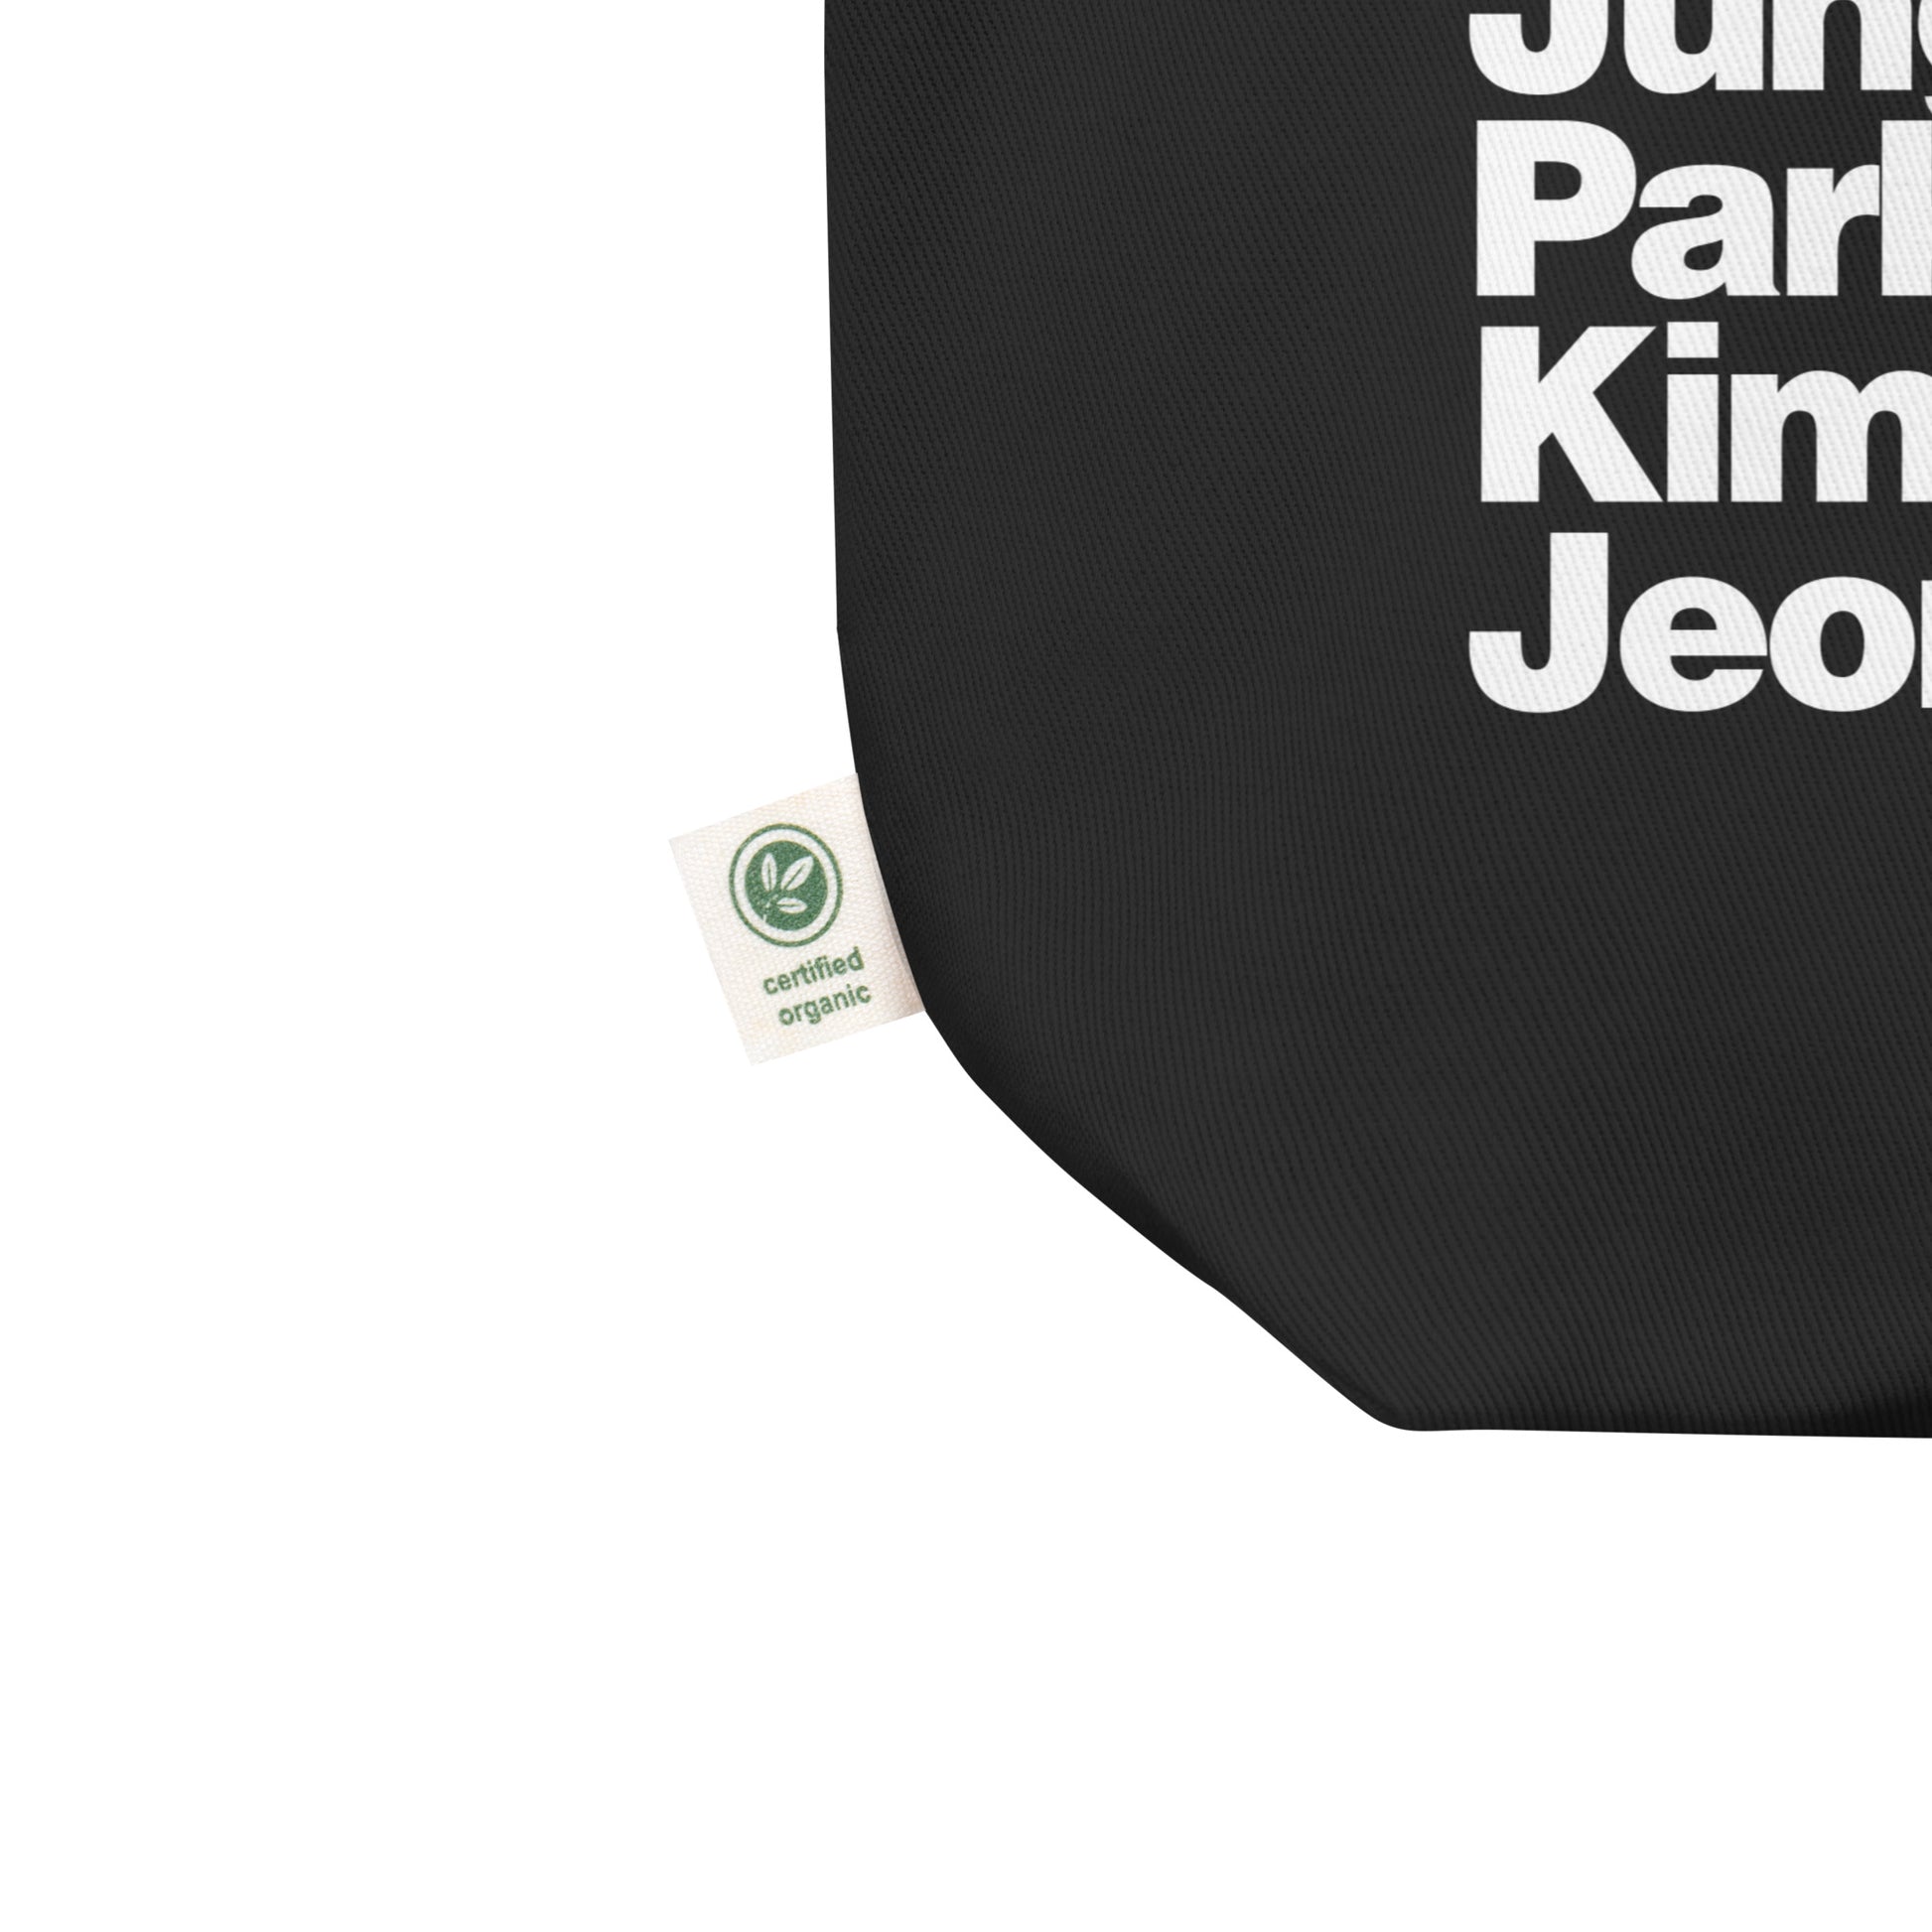 BTS Tumblrcore Organic Black Tote Bag